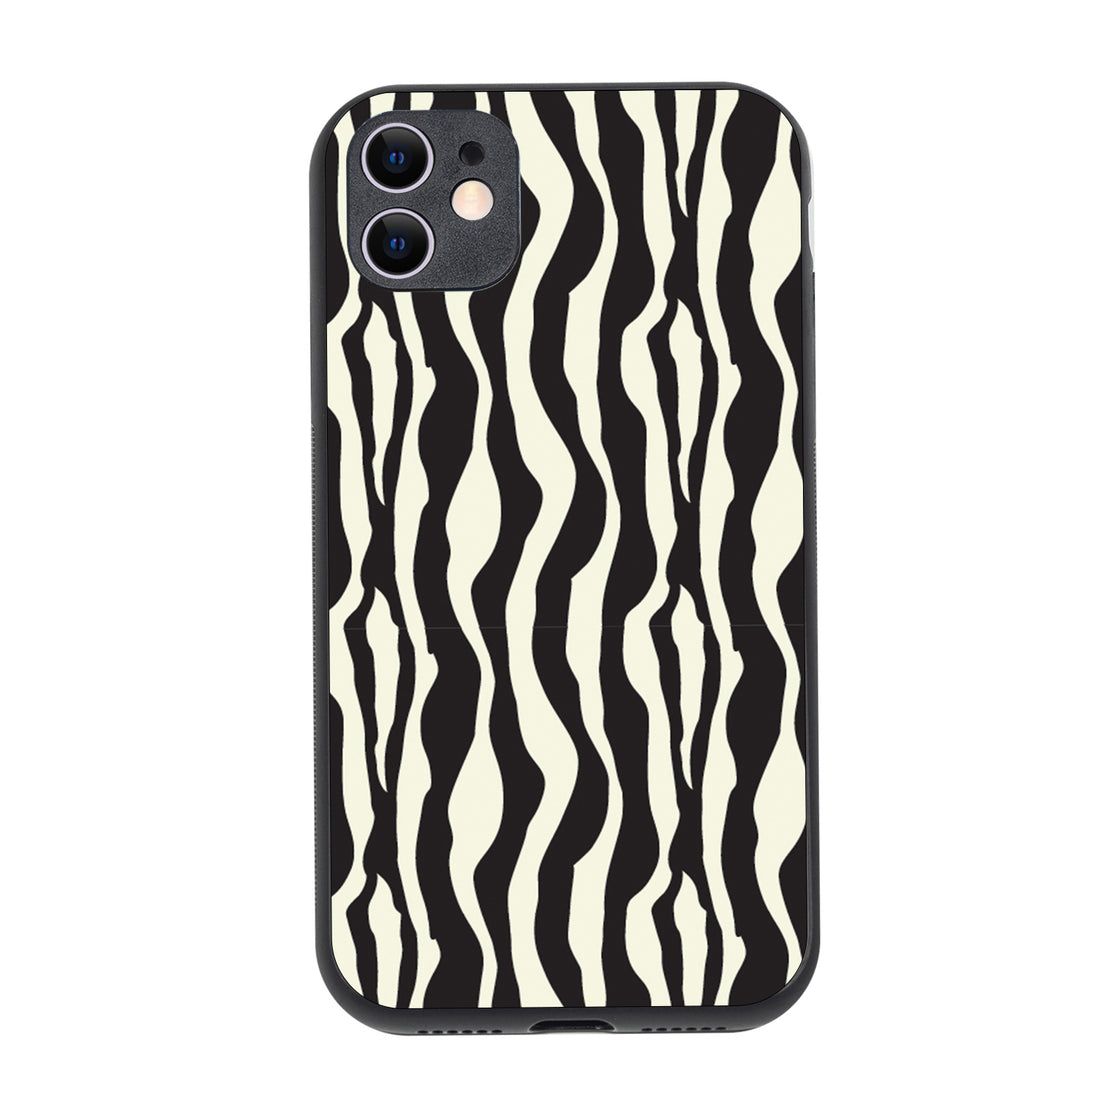 Zebra Animal Print iPhone 11 Case